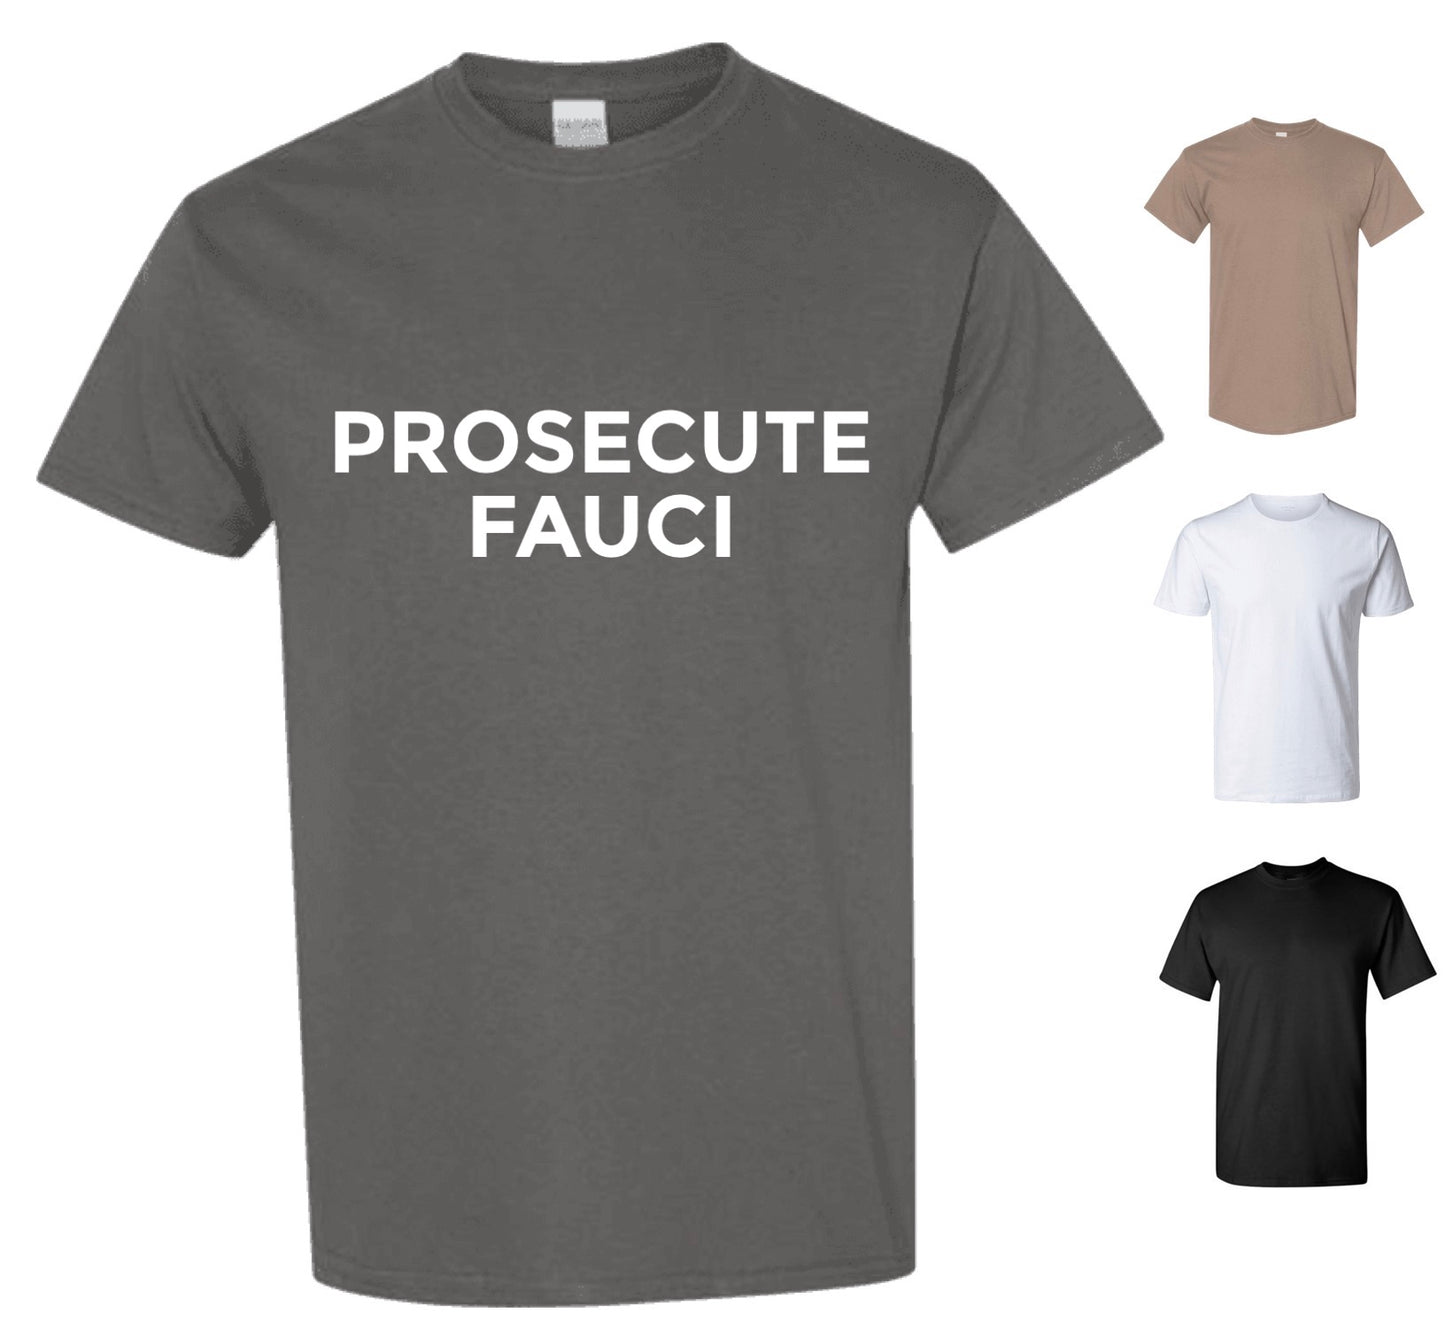 Prosecute Fauci Tee Shirt (FREE Shipping)